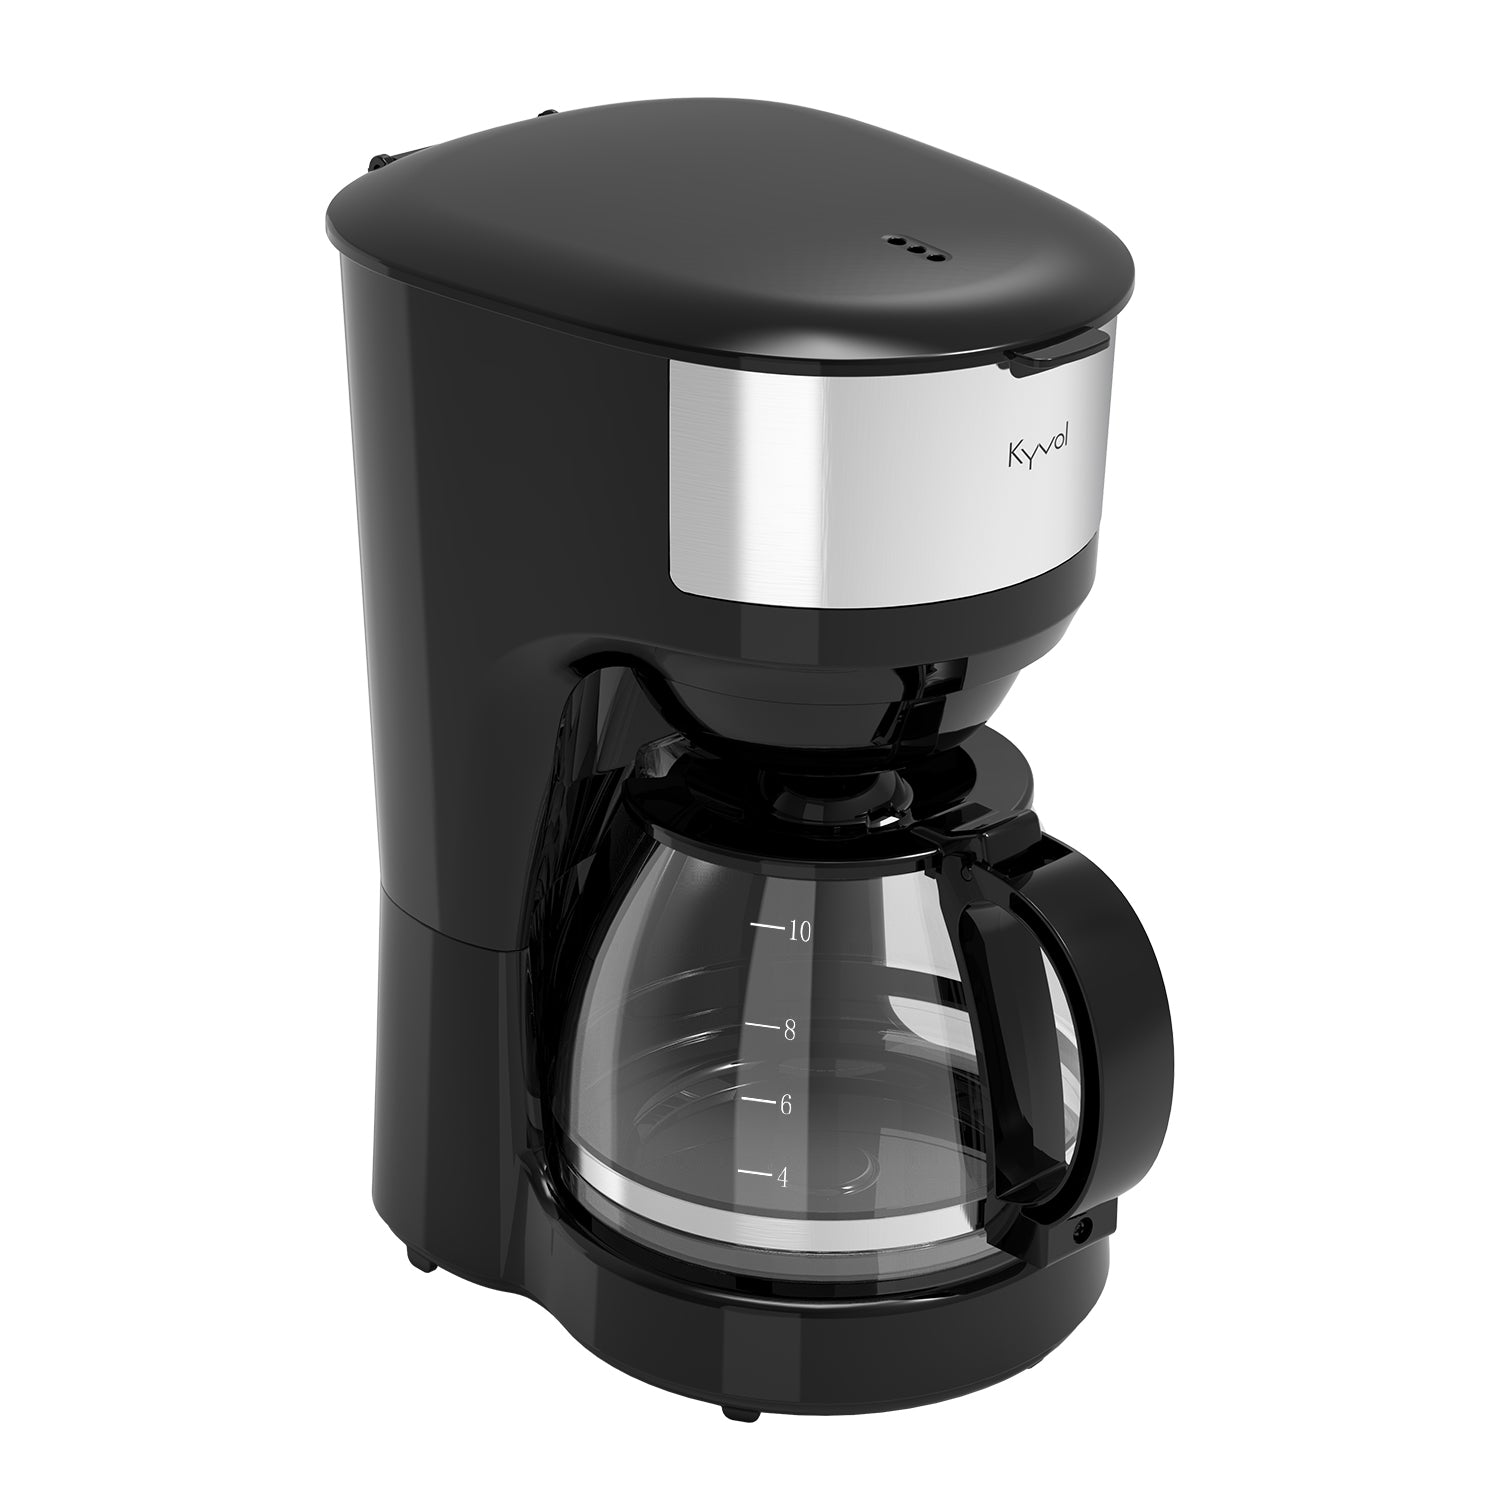 Кофеварка капельного типа Kyvol CM-DM102A черная кофеварка капельного типа kyvol cm dm102a черная